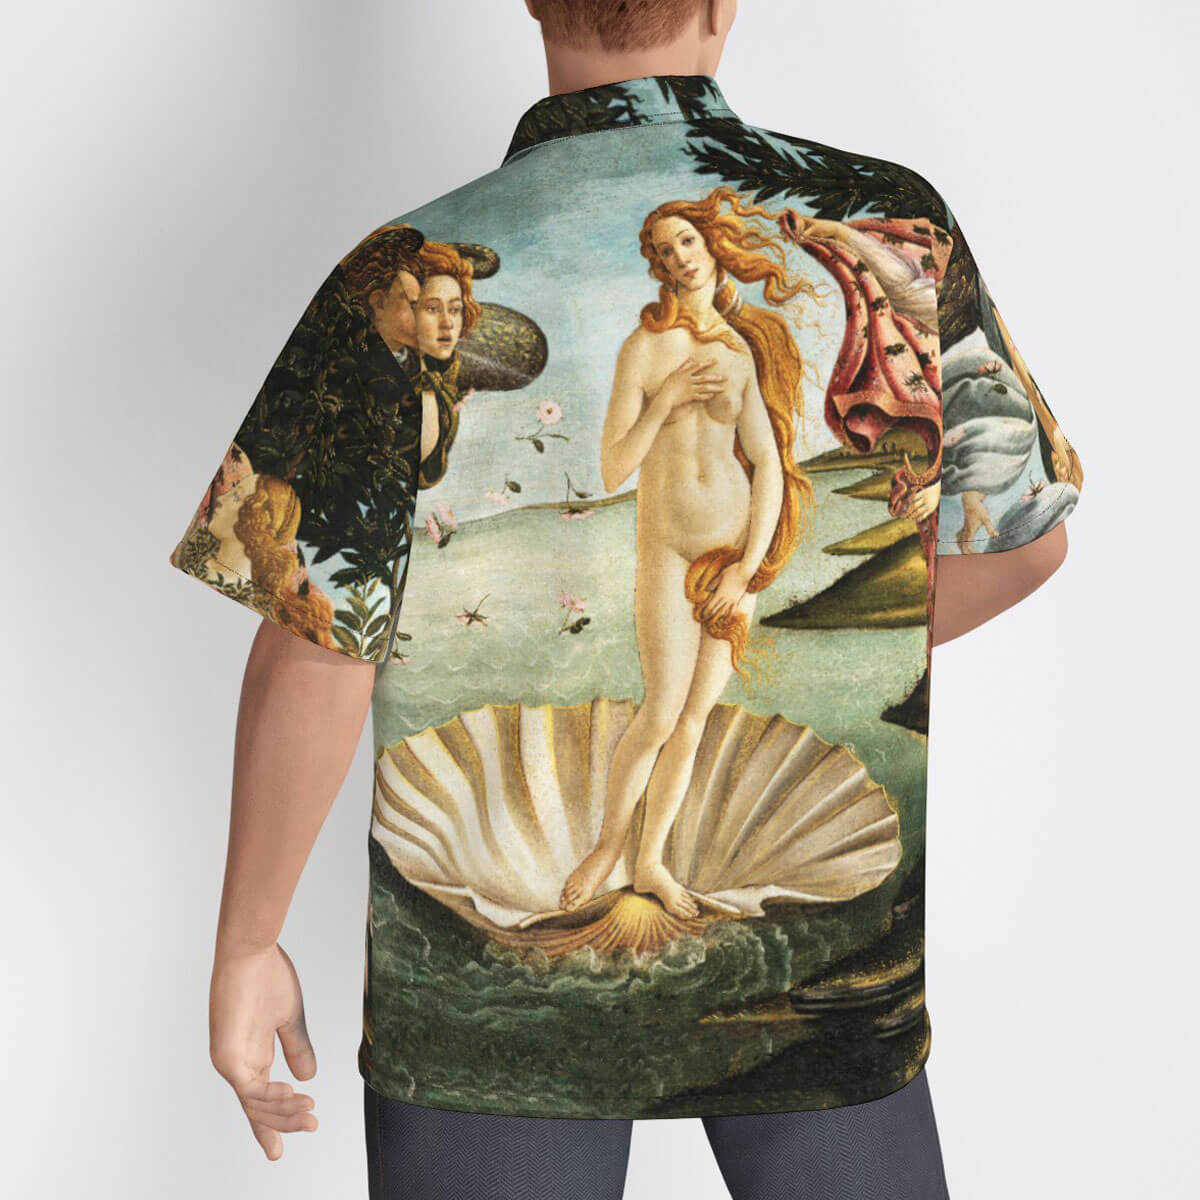 Botticelli's Venus Hawaiian Shirt in tropical setting